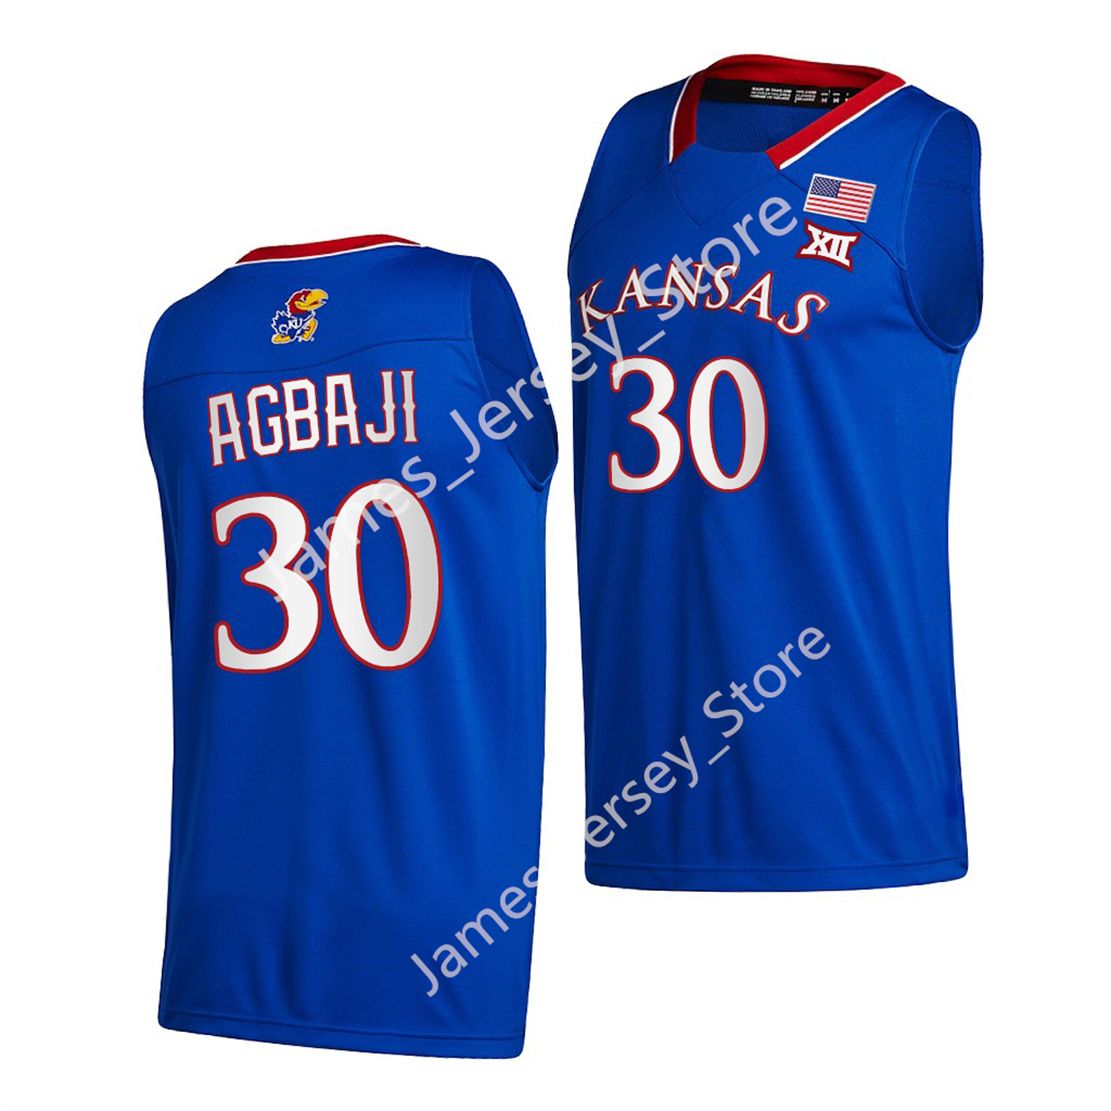 30 Ochai Agbaji Basketball Jersey6